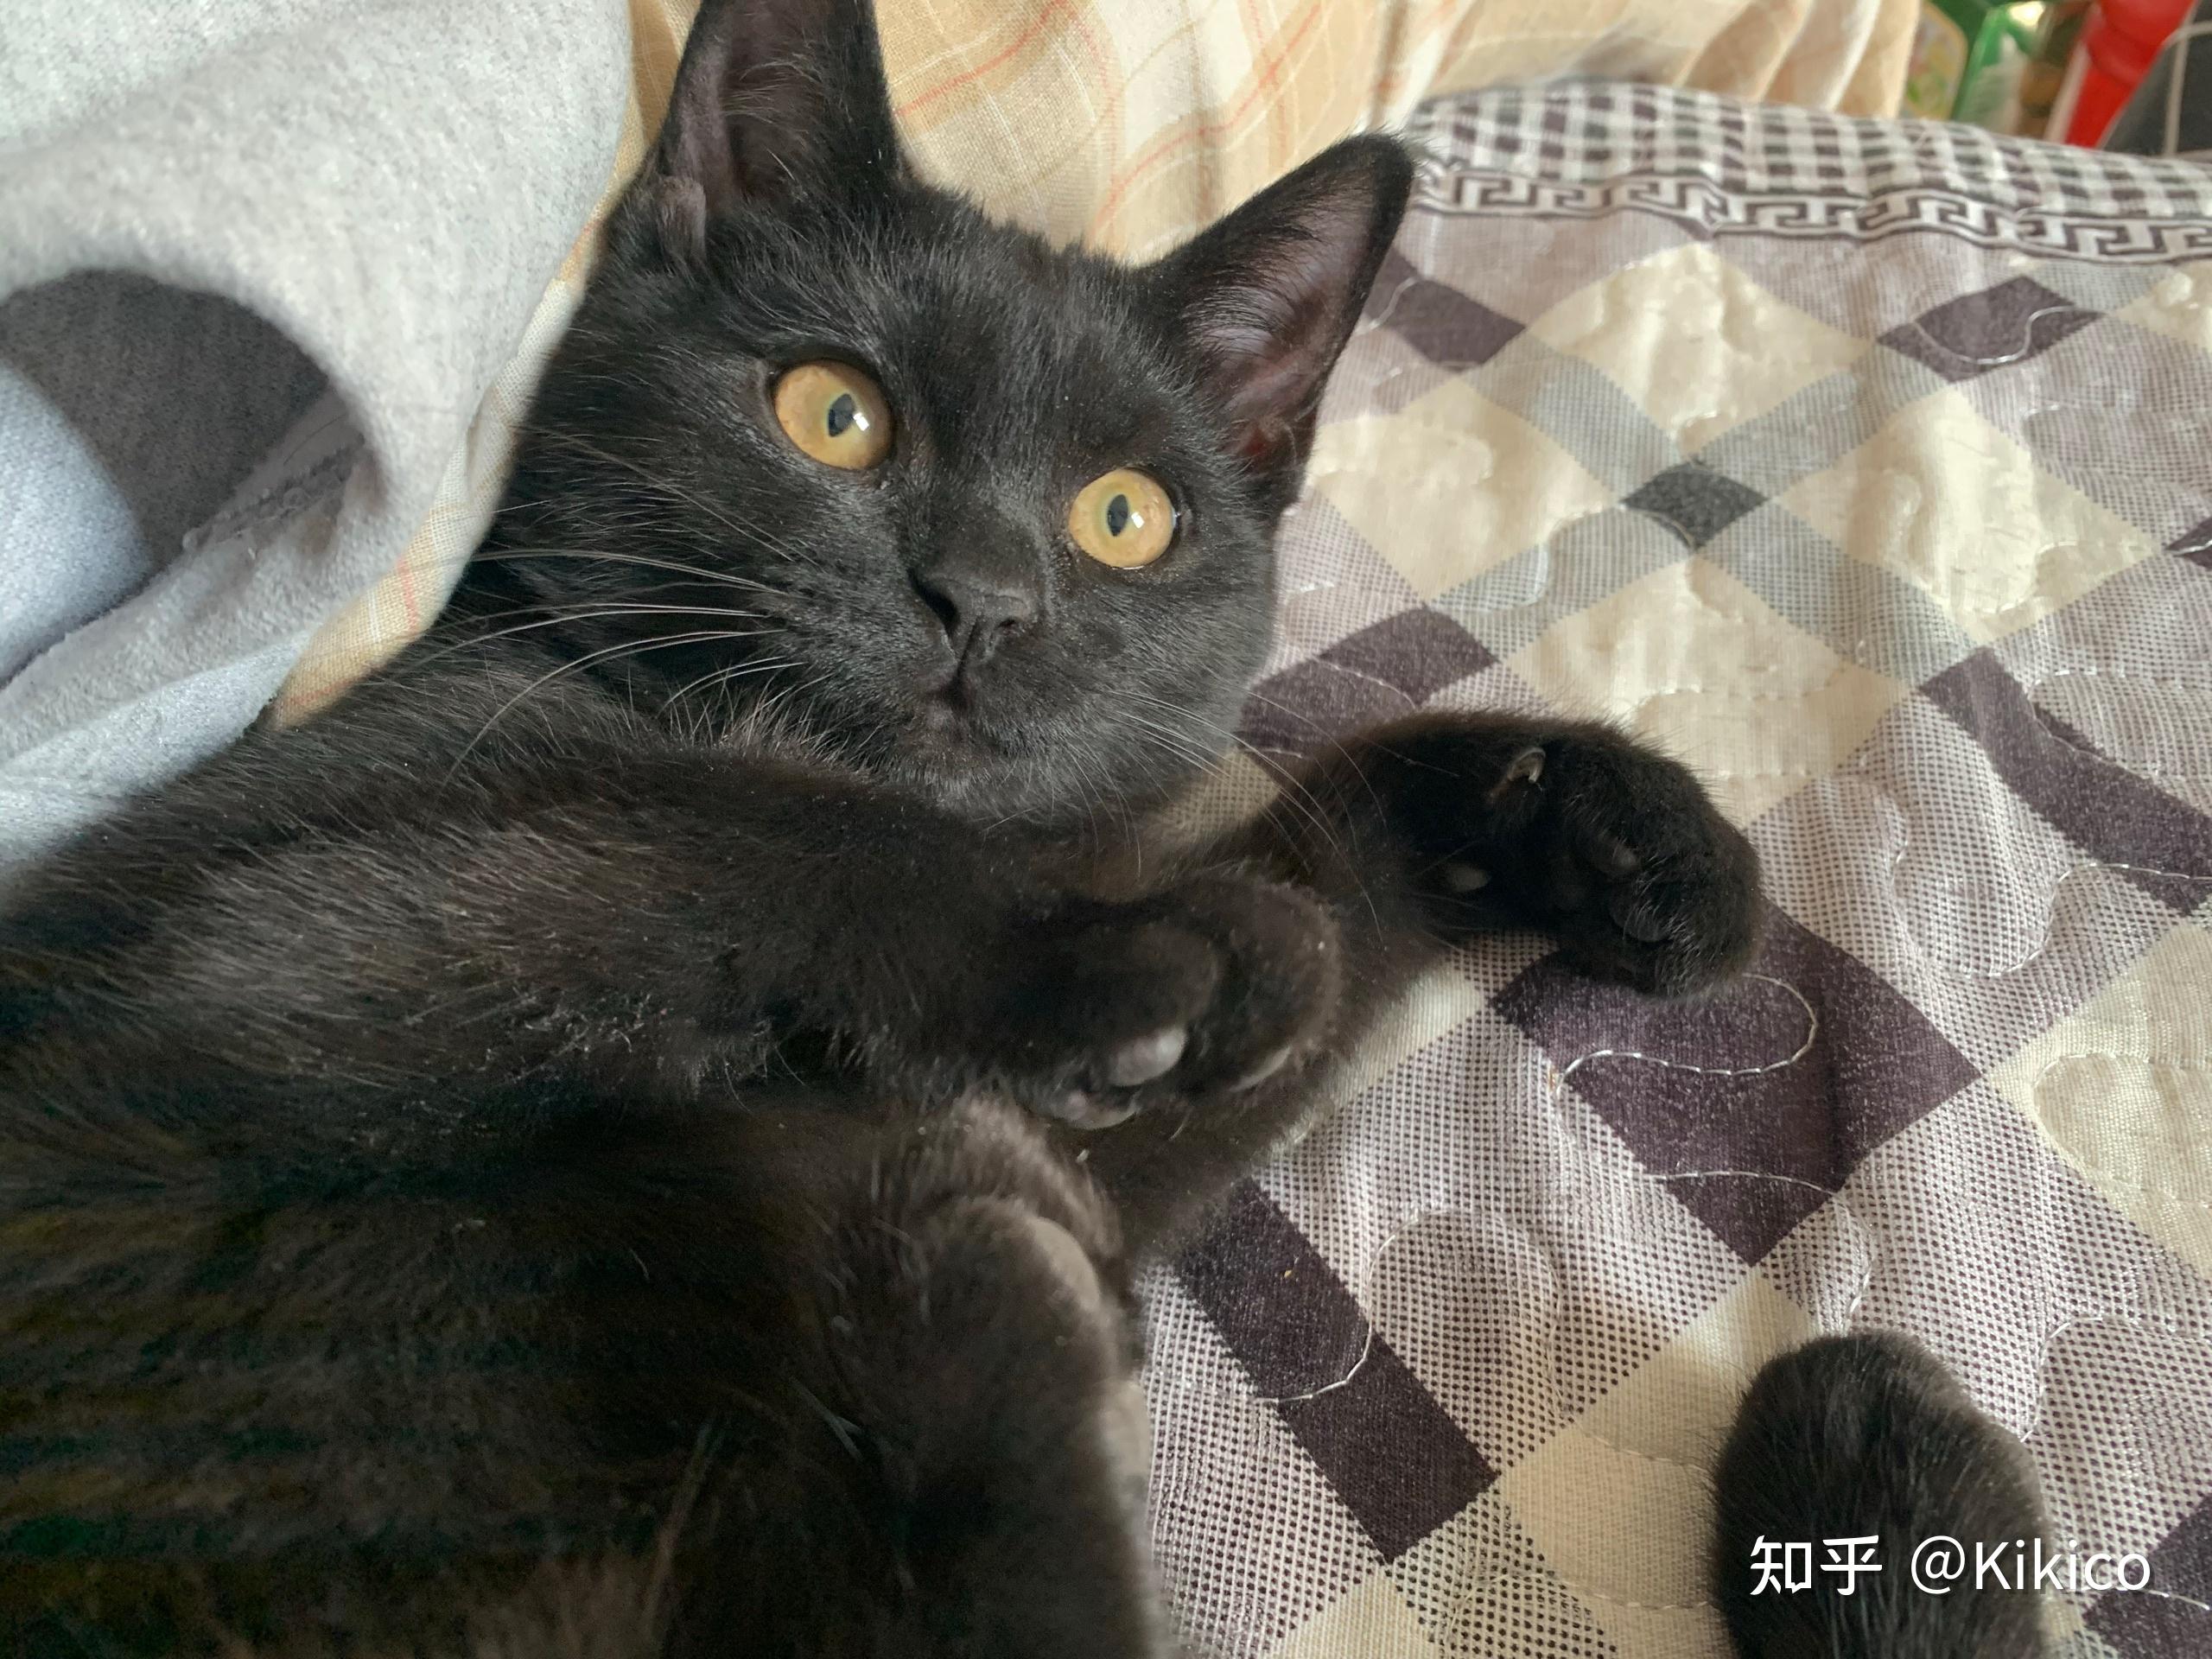 暹罗猫和英短交配能生出纯黑色的小猫吗? 